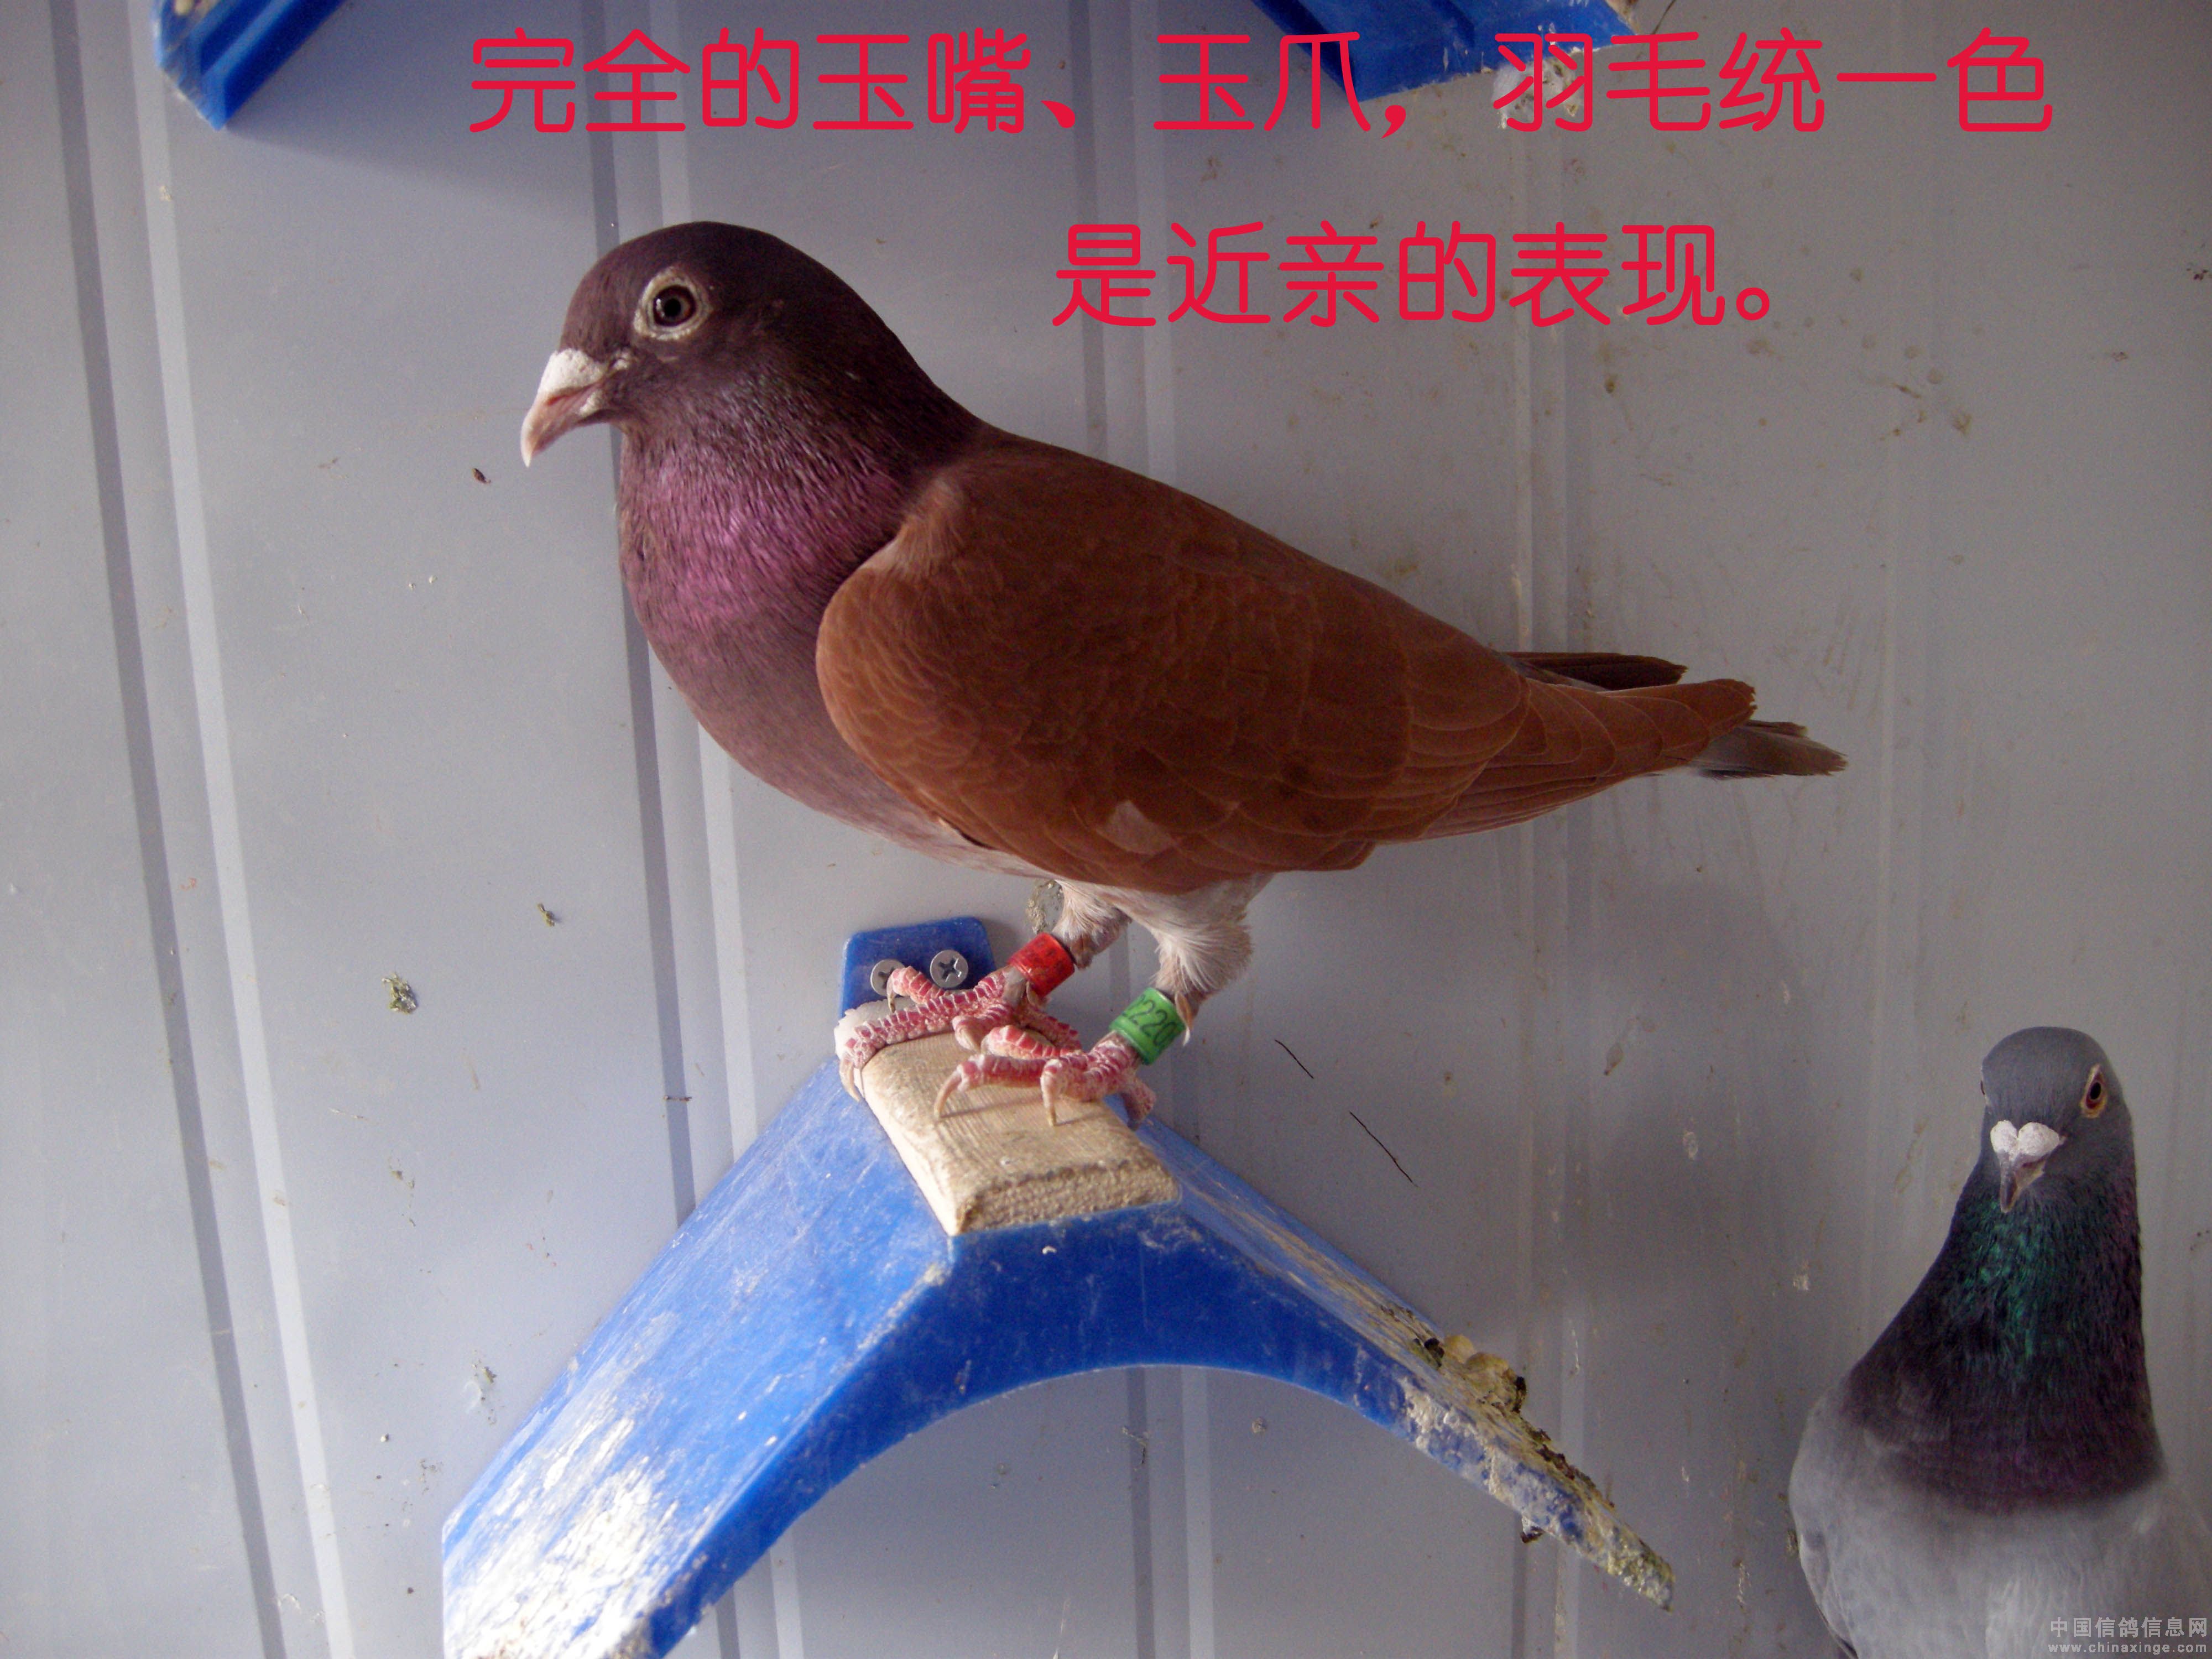 黑龙江伟路国际赛鸽公棚照片查看-中国信鸽信息网各地公棚